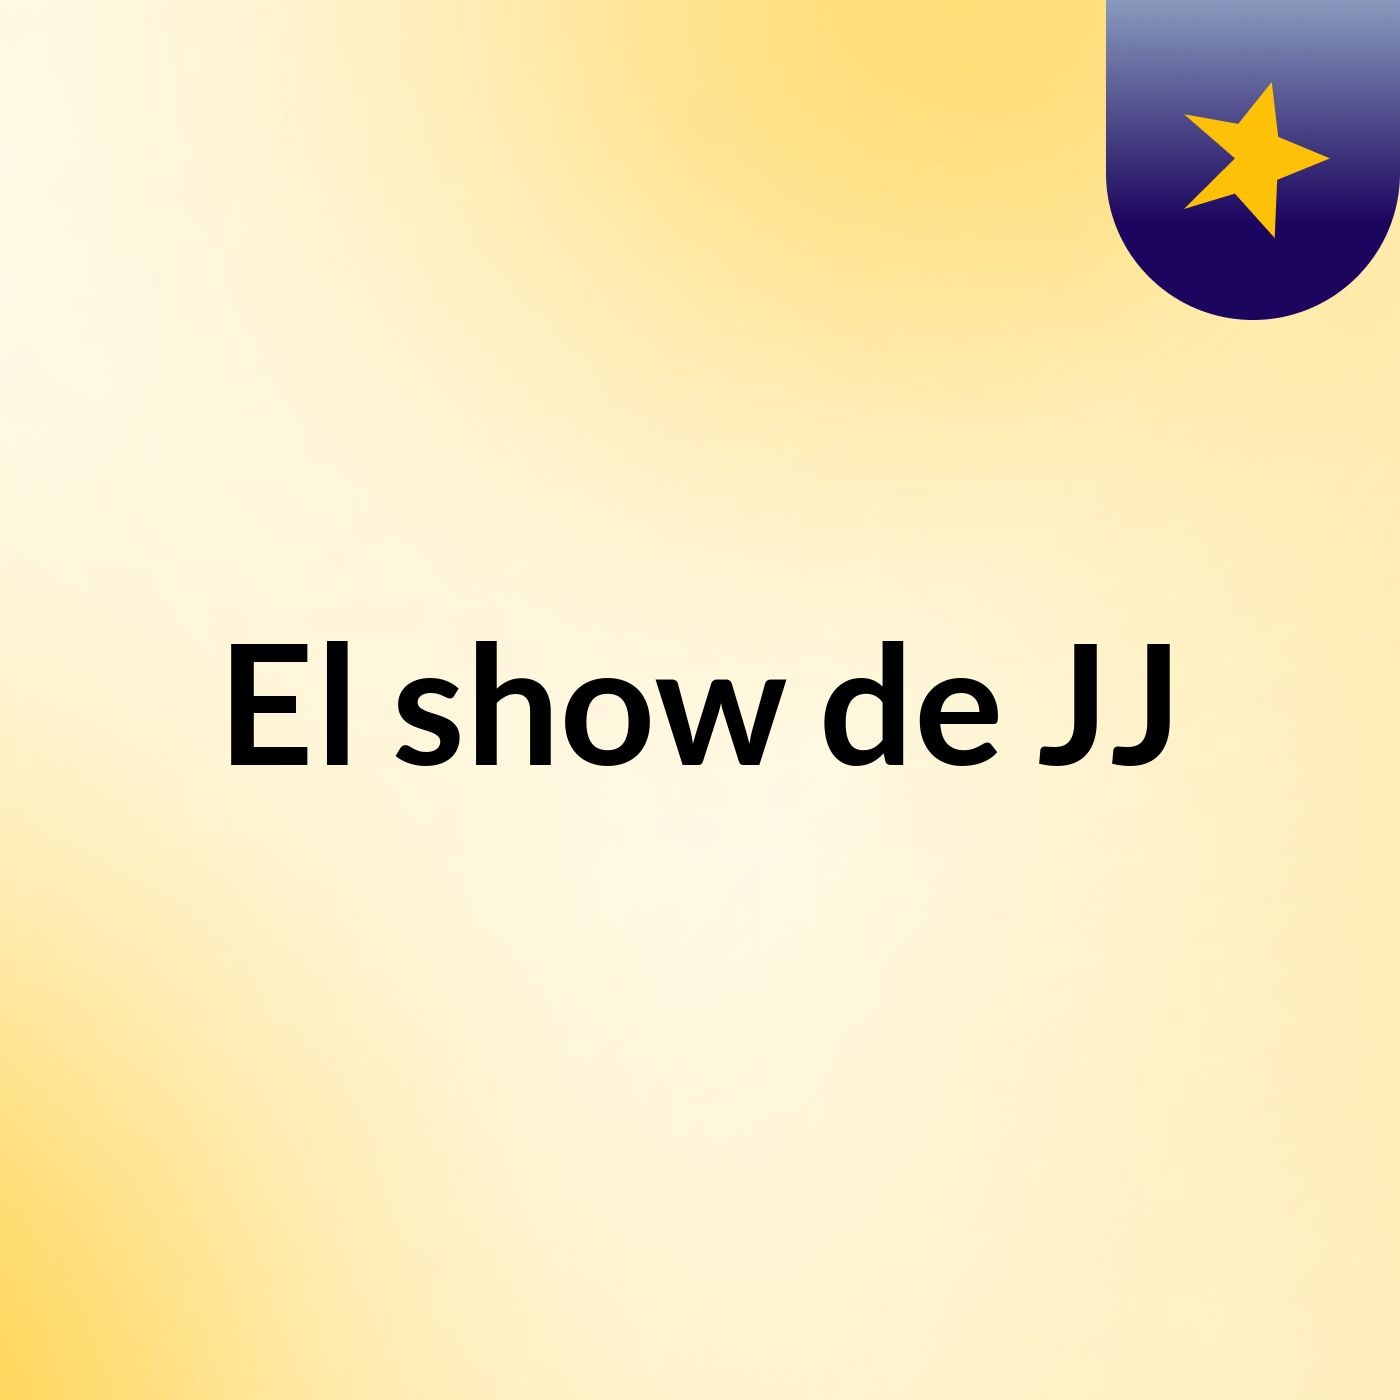 El show de JJ